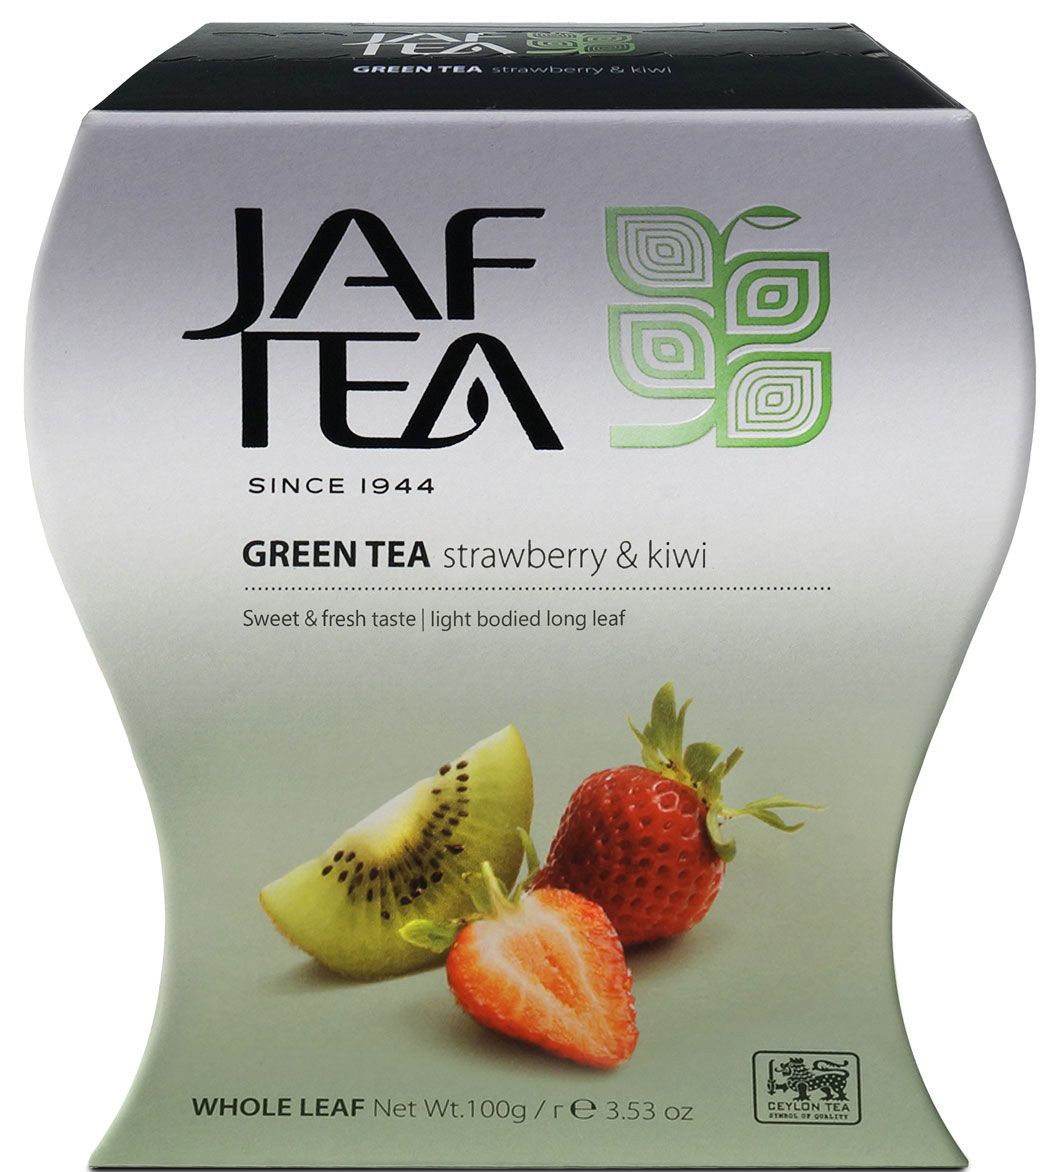 Чай JAF TEA  Green Strawberry Kiwi чай зеленый с клубникой и киви, 100 г